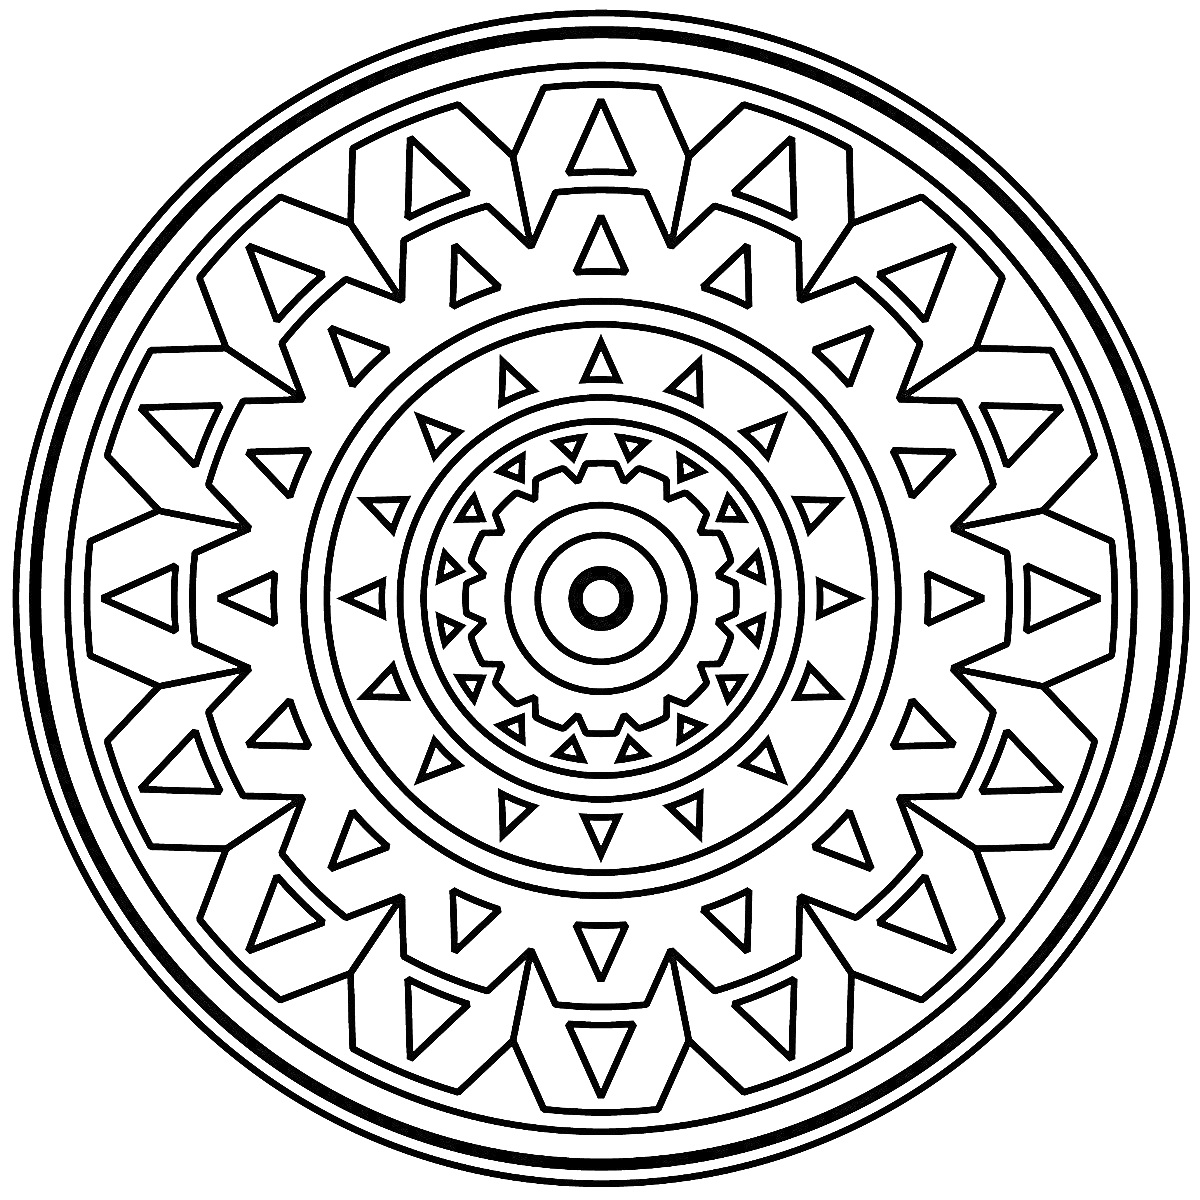 Раскраска Мандала с концентрическими кругами, зубчатыми узорами и треугольными элементами